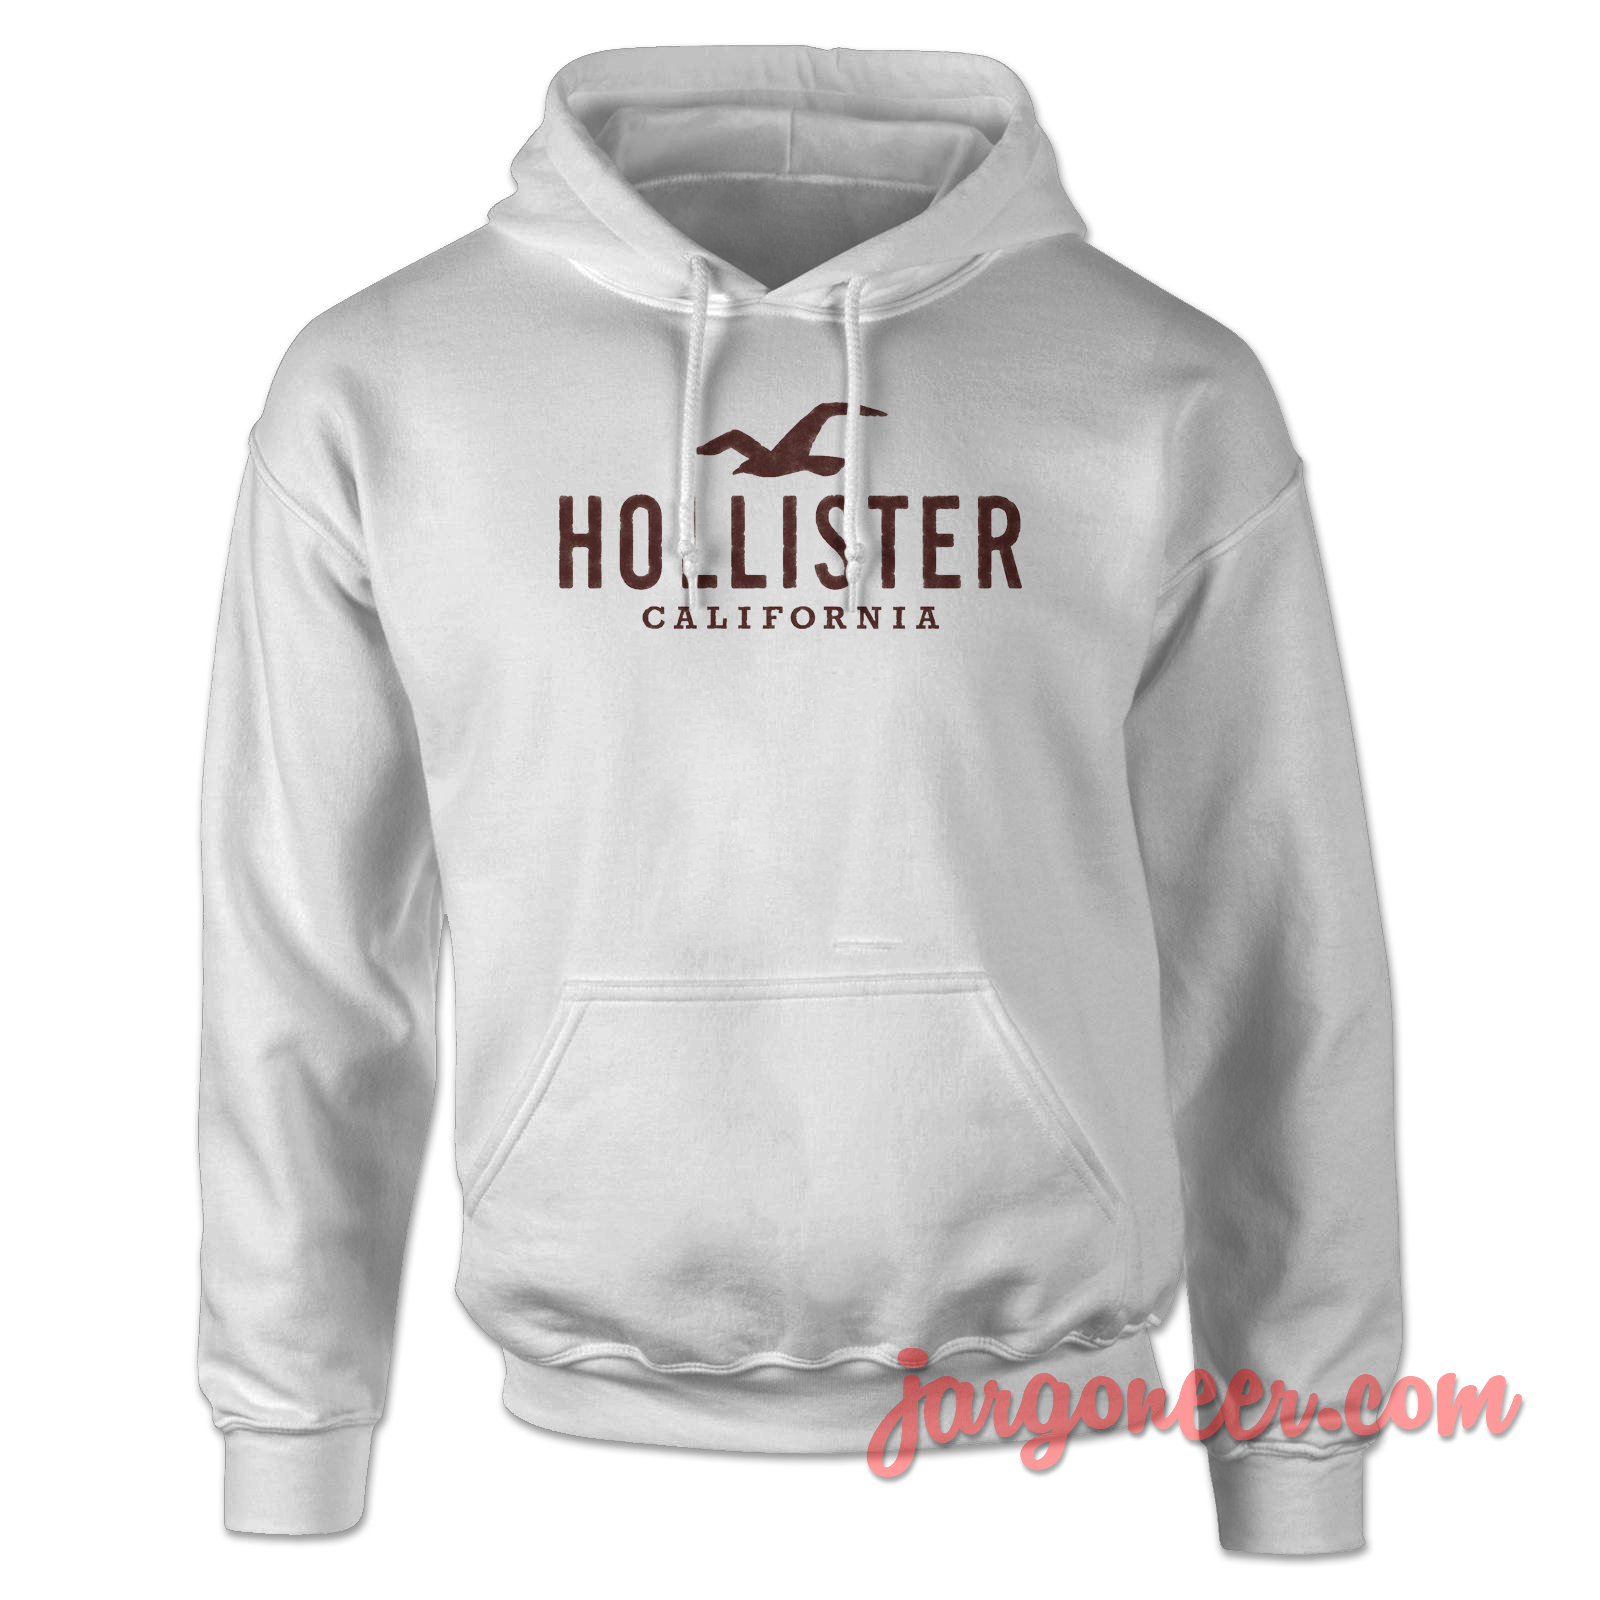 Hollister California 2 - Shop Unique Graphic Cool Shirt Designs